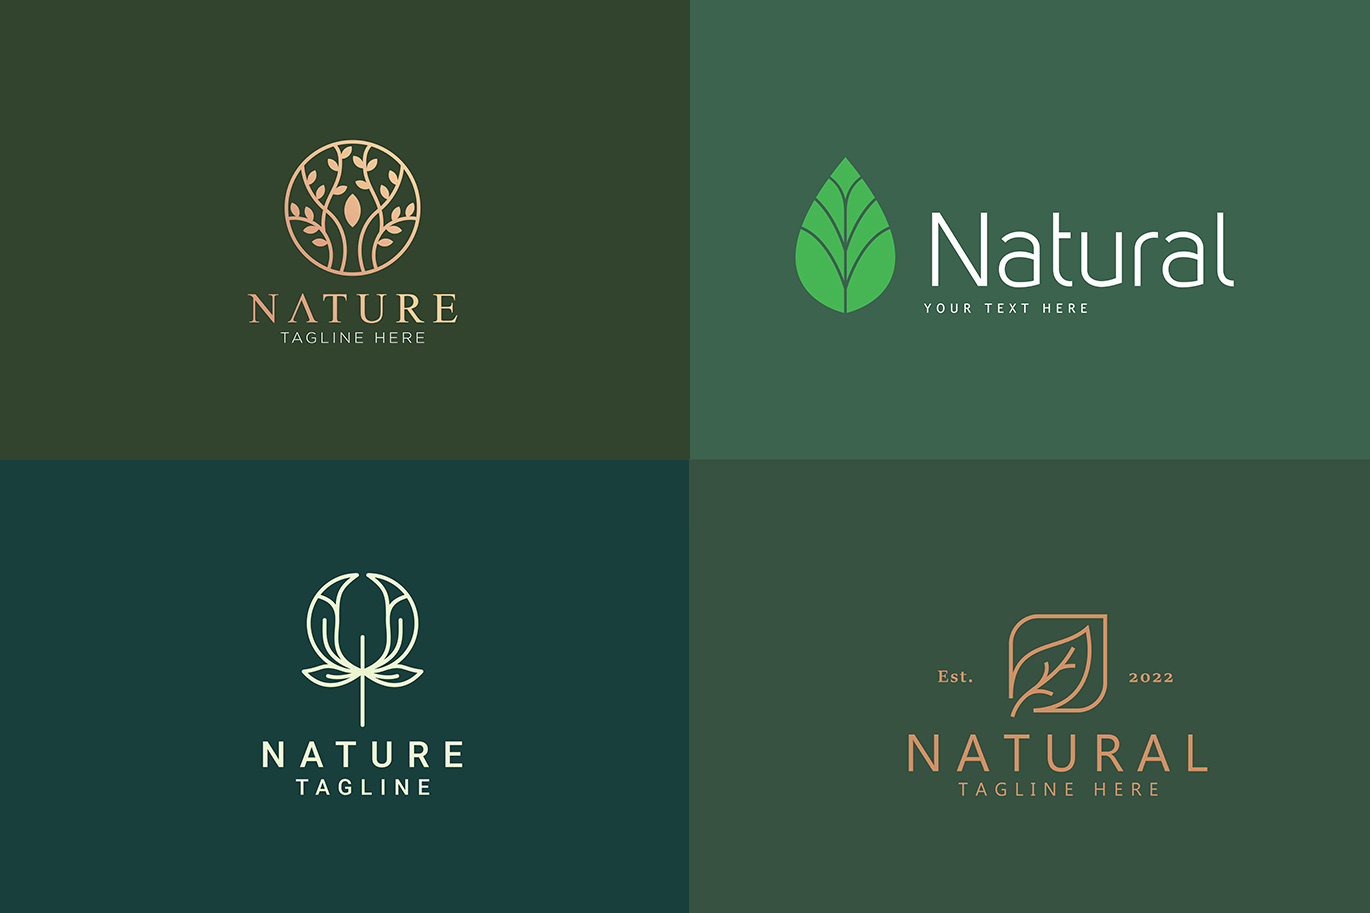 自然标志矢量 LOGO 合集 Nature Logos Stock Vector Collections